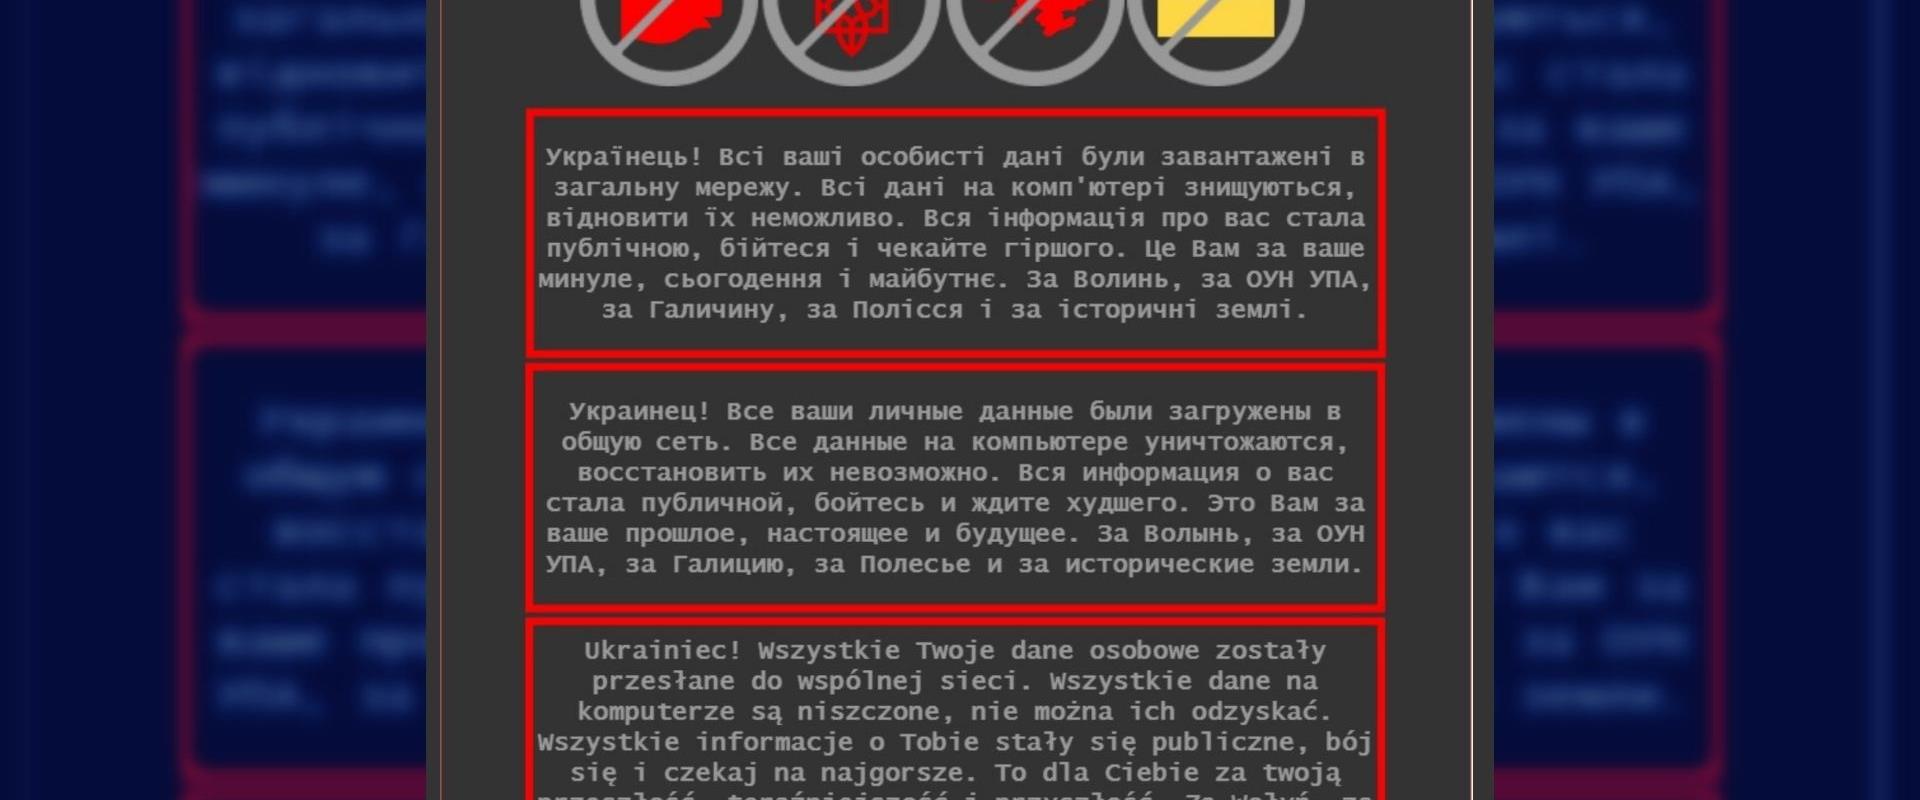 הודעת ההאקרים באתר משרד החוץ האוקראיני, היום